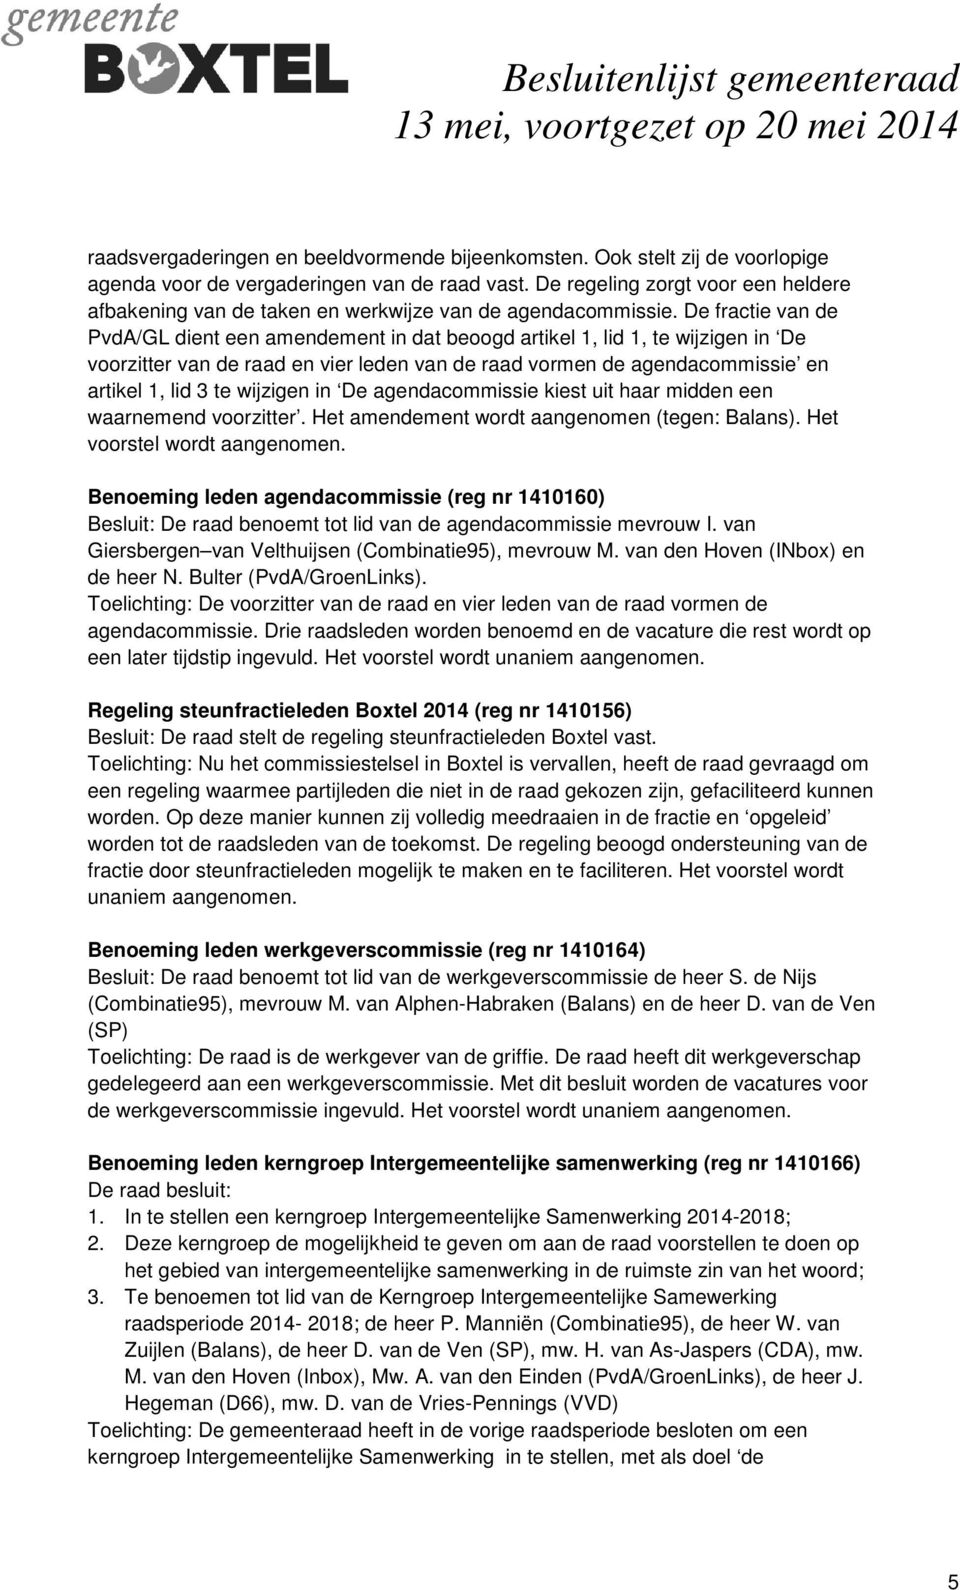 De fractie van de PvdA/GL dient een amendement in dat beoogd artikel 1, lid 1, te wijzigen in De voorzitter van de raad en vier leden van de raad vormen de agendacommissie en artikel 1, lid 3 te